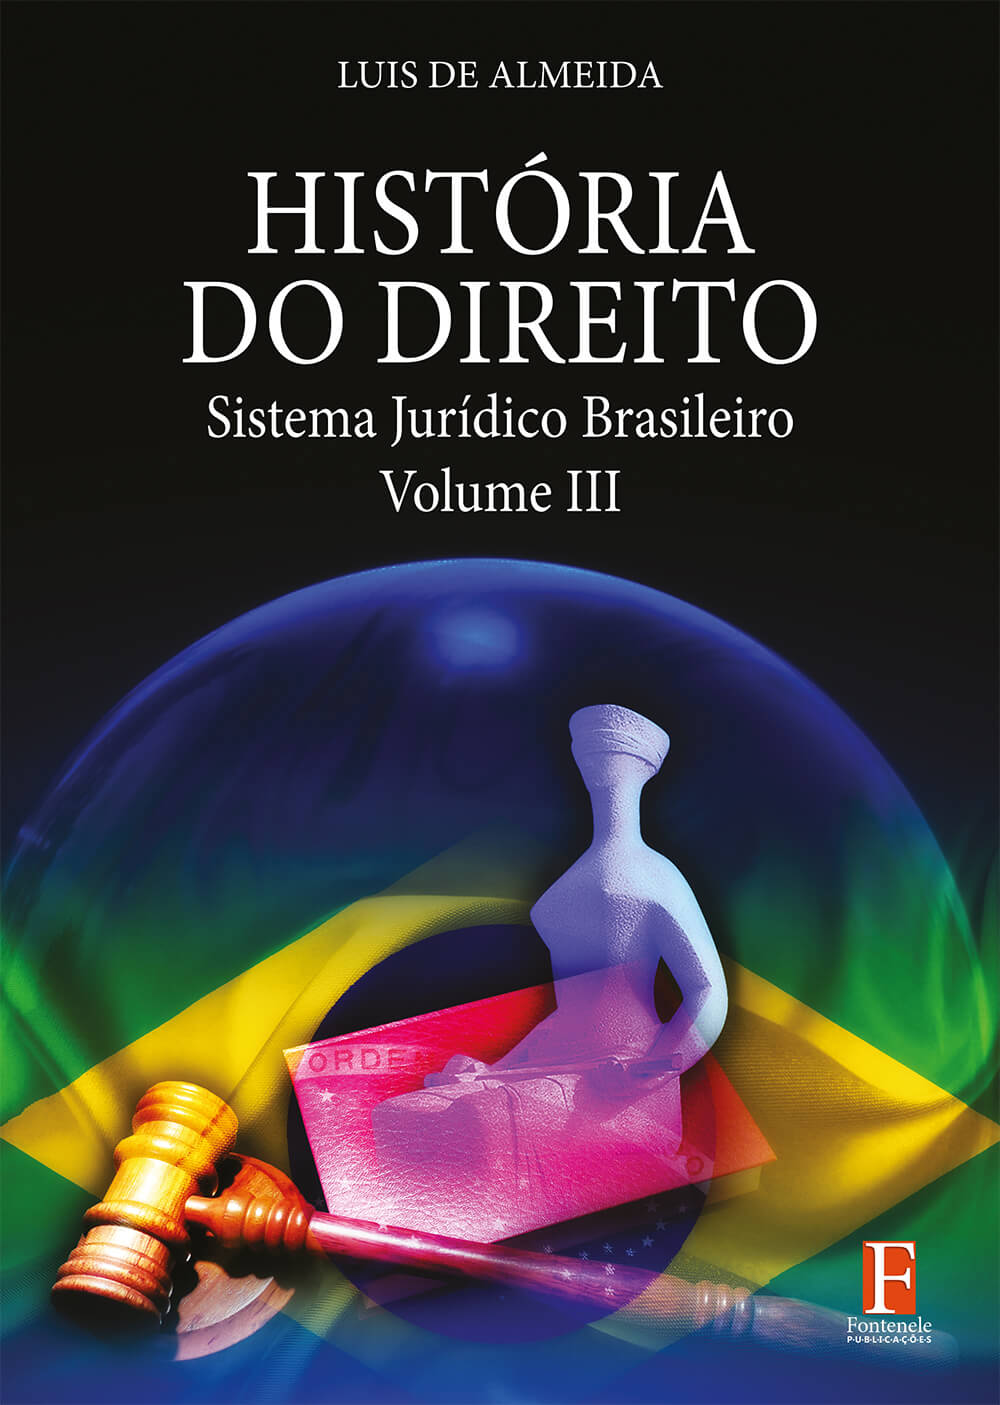 Fontenele Publicações / 11 95150-3481 / 11  95150-4383 Direito - História do Direitos – Sistema Jurídico Brasileiro – Volume III